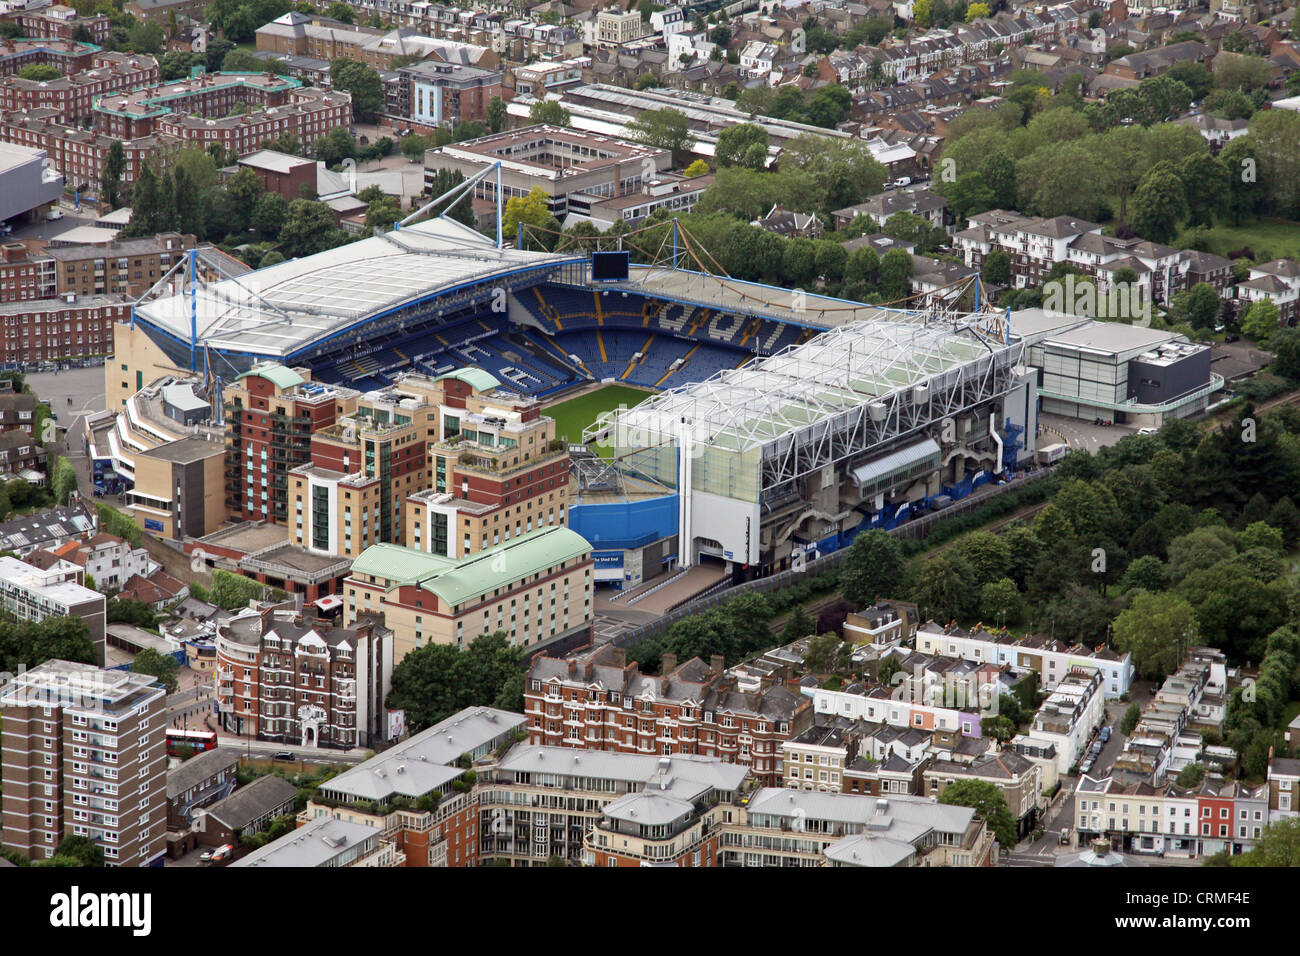 Vue aérienne du stade de football du FC Chelsea, Stamford Bridge, London,UK Banque D'Images